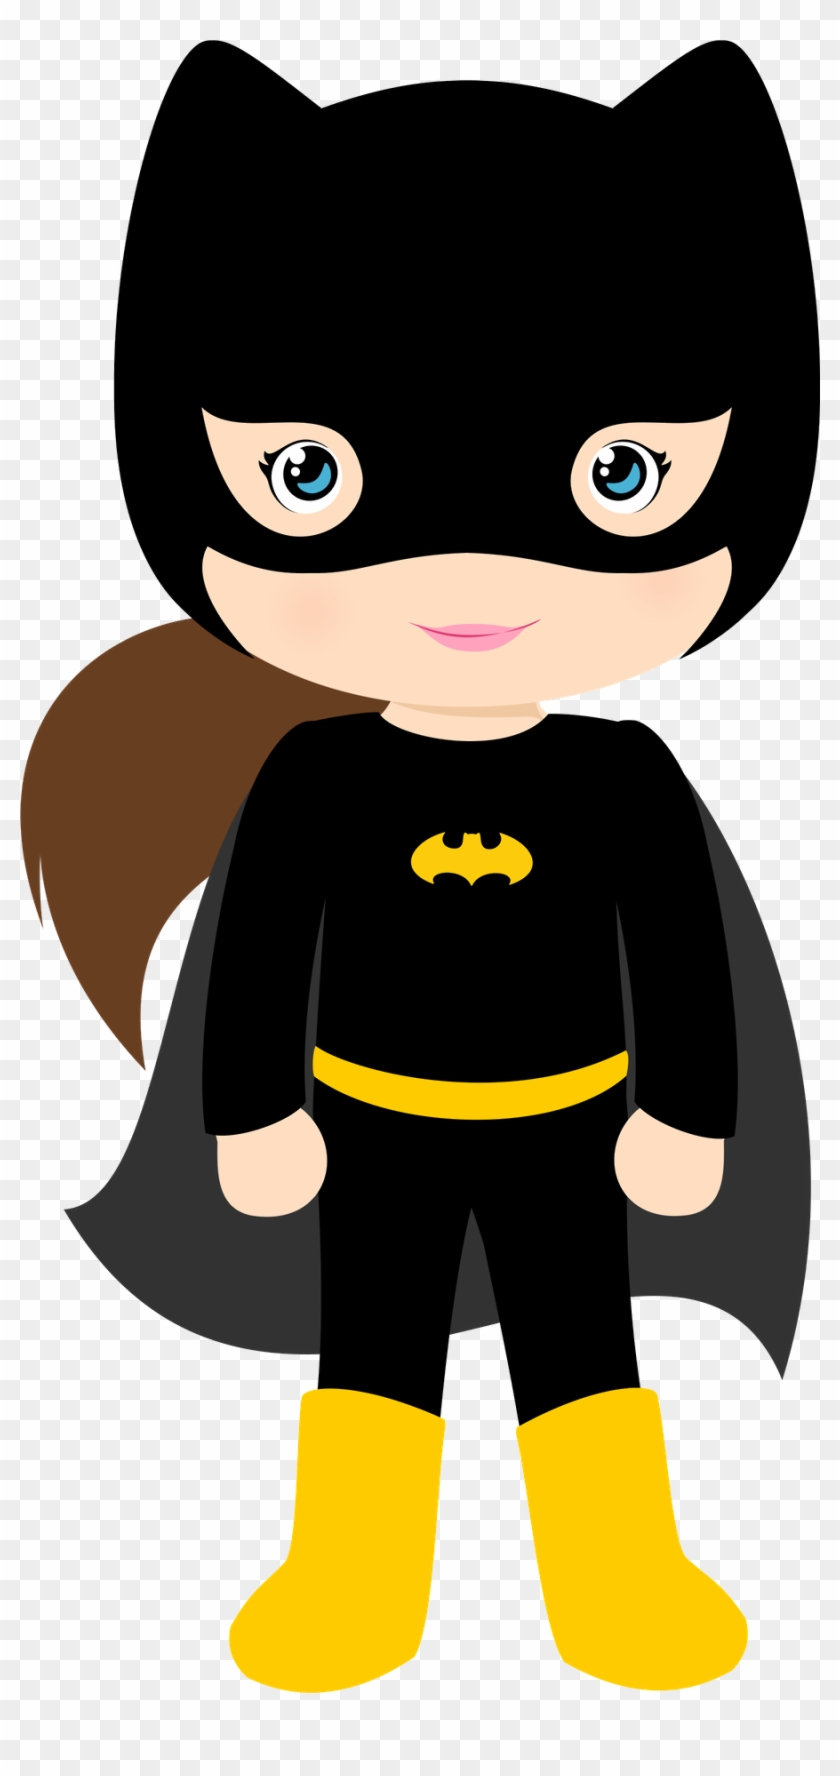 Super Héroes - Batman Girl Cartoon - Free Transparent PNG Clipart Images  Download